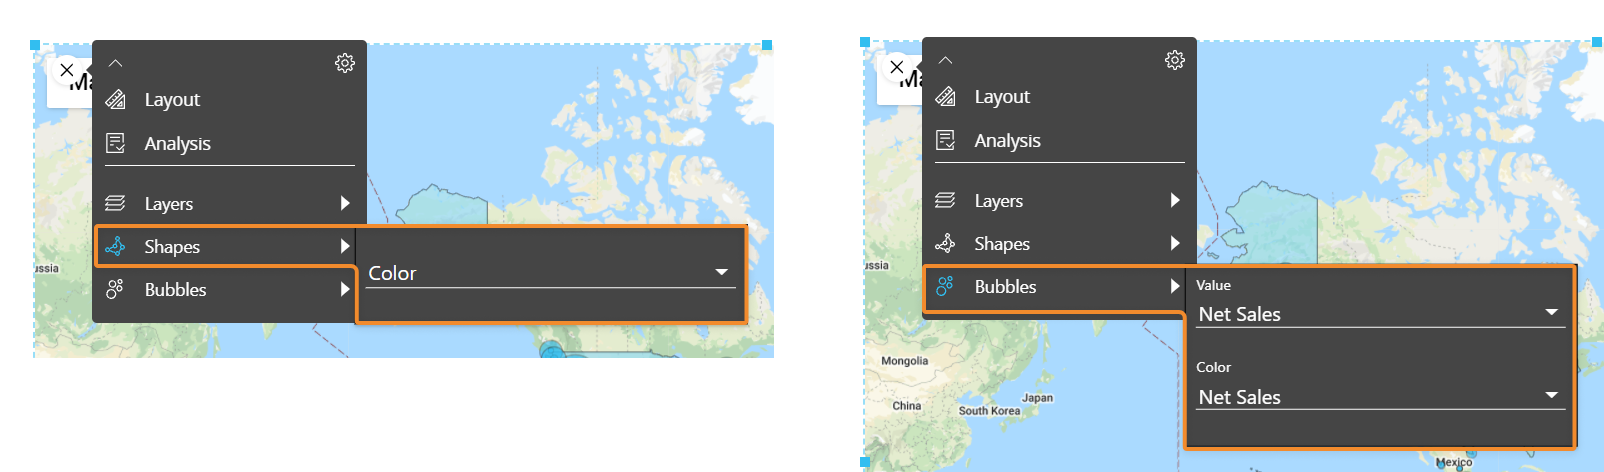 contents/assets/images/assets/images/gmaps-customize-shape-bubbles.png